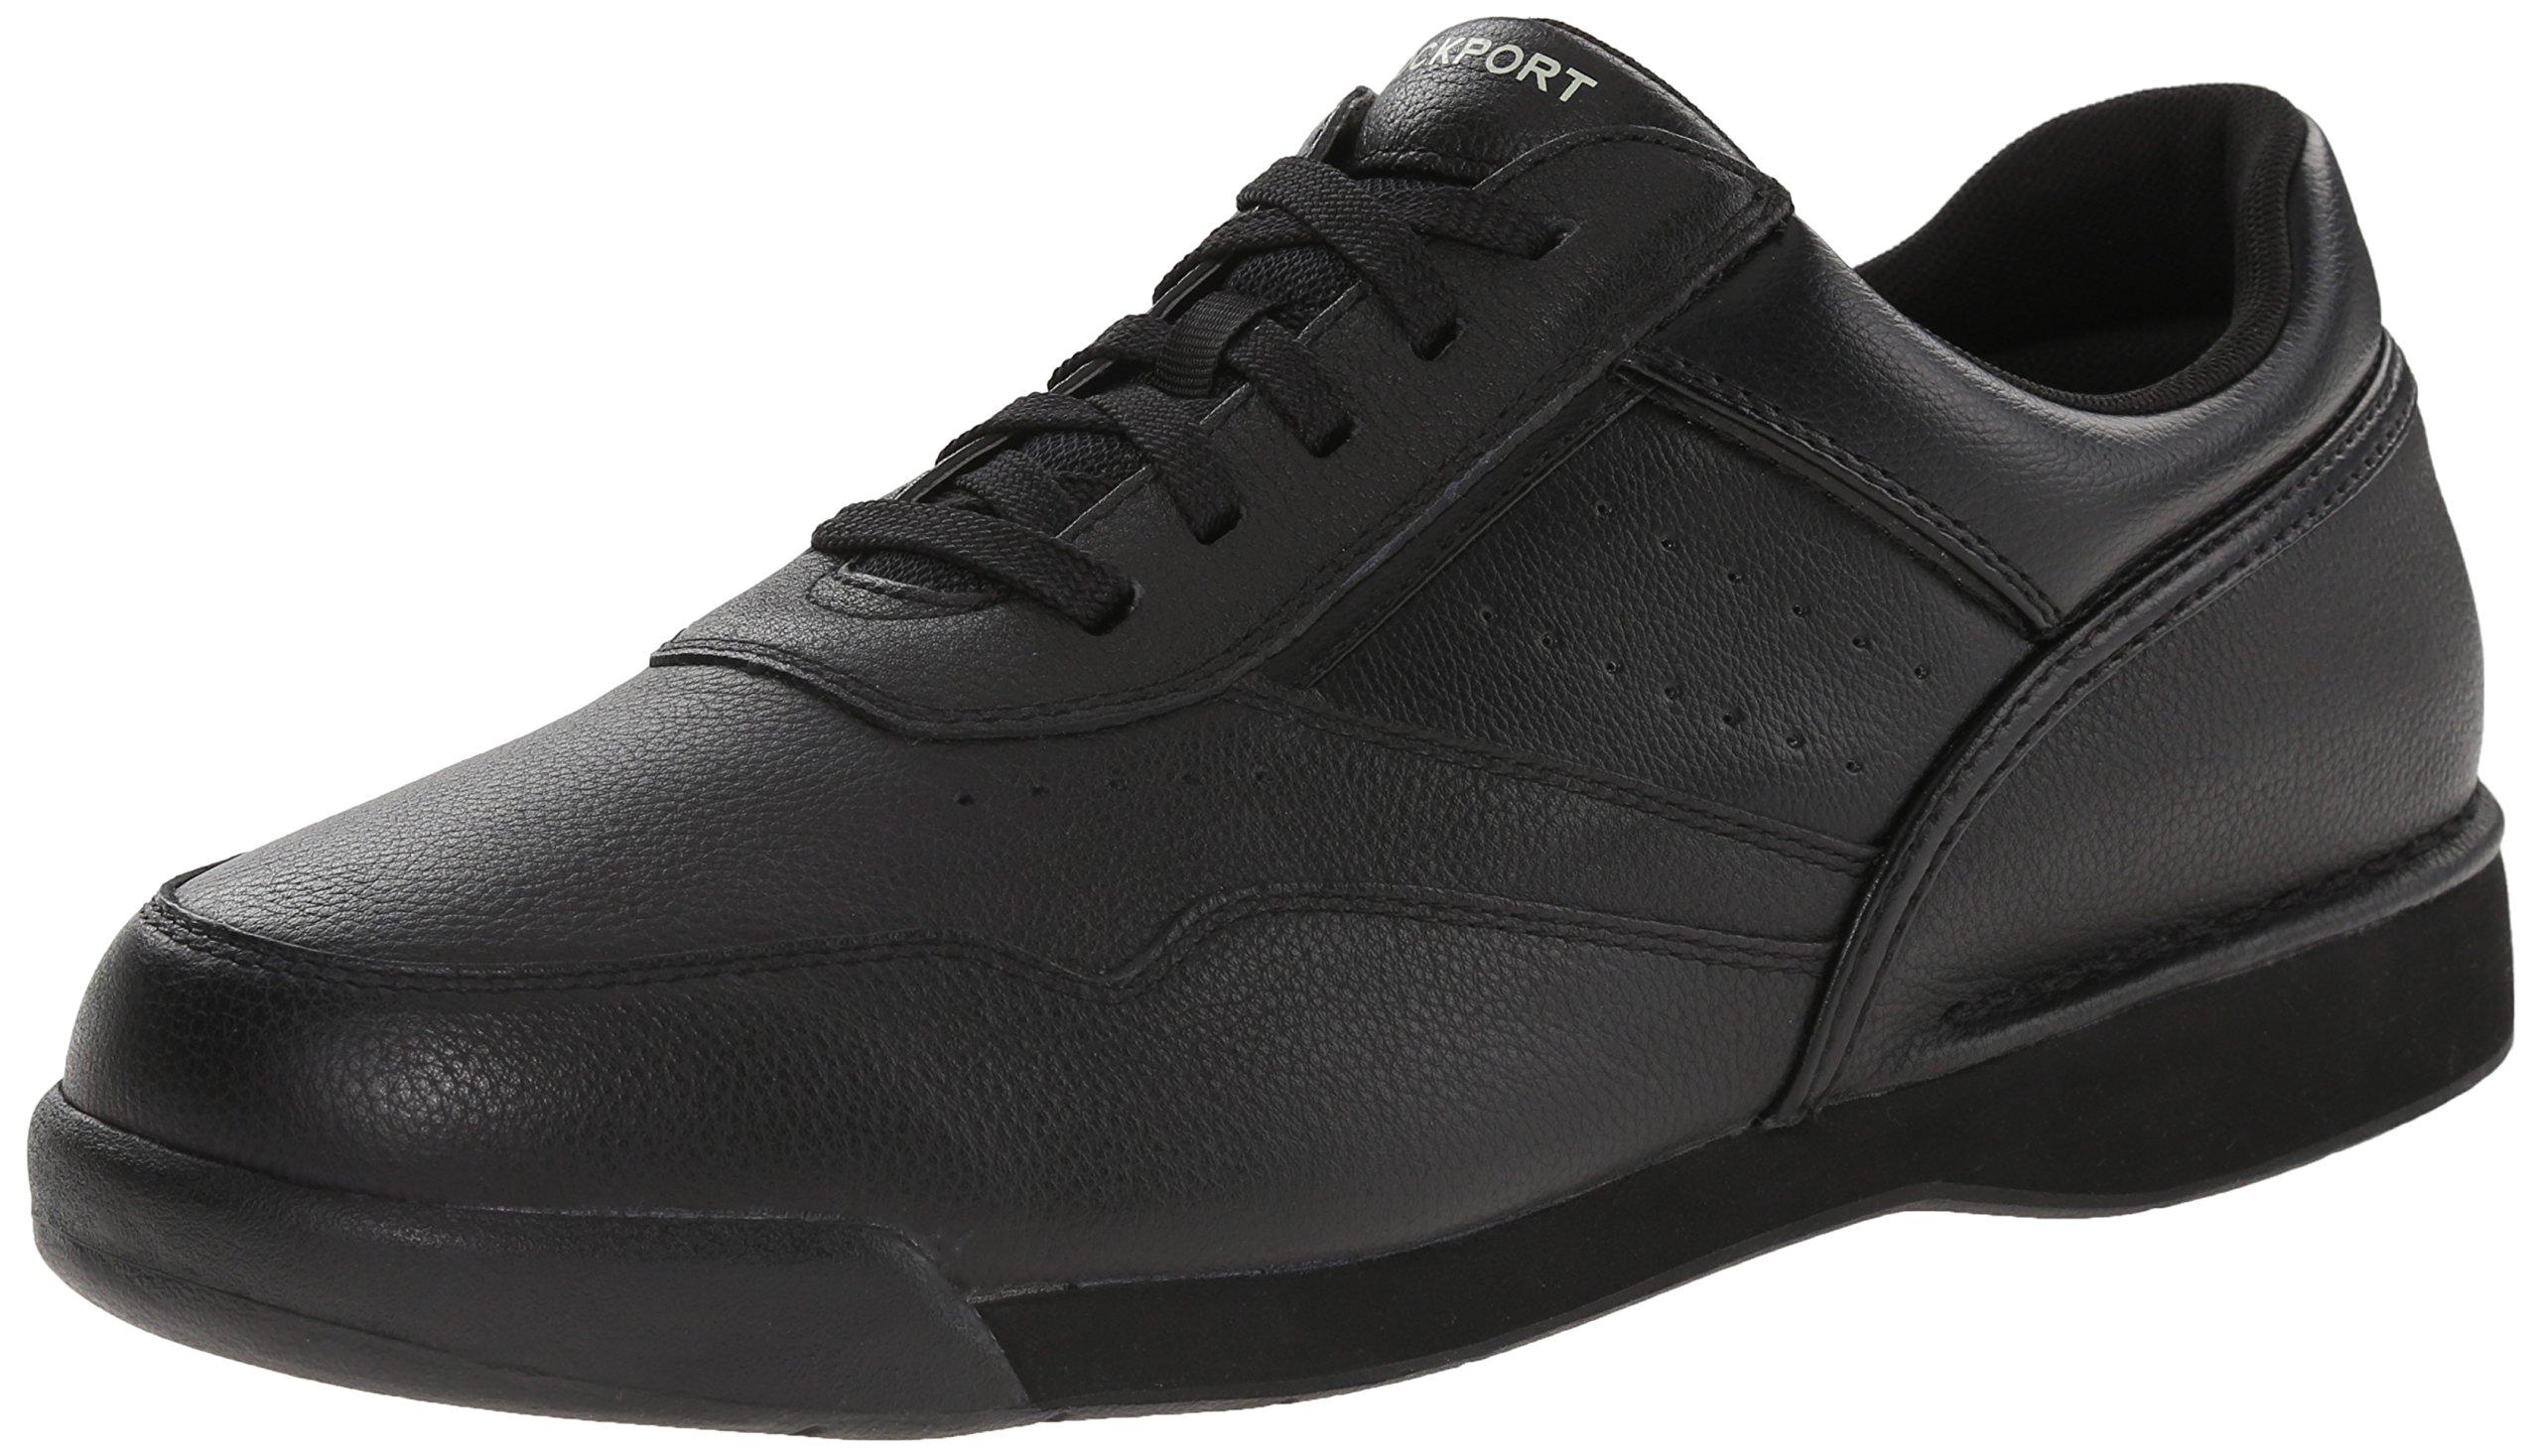 Rockport M7100 Pro Walker Walking Shoe,black,13 W Us for Men - Lyst